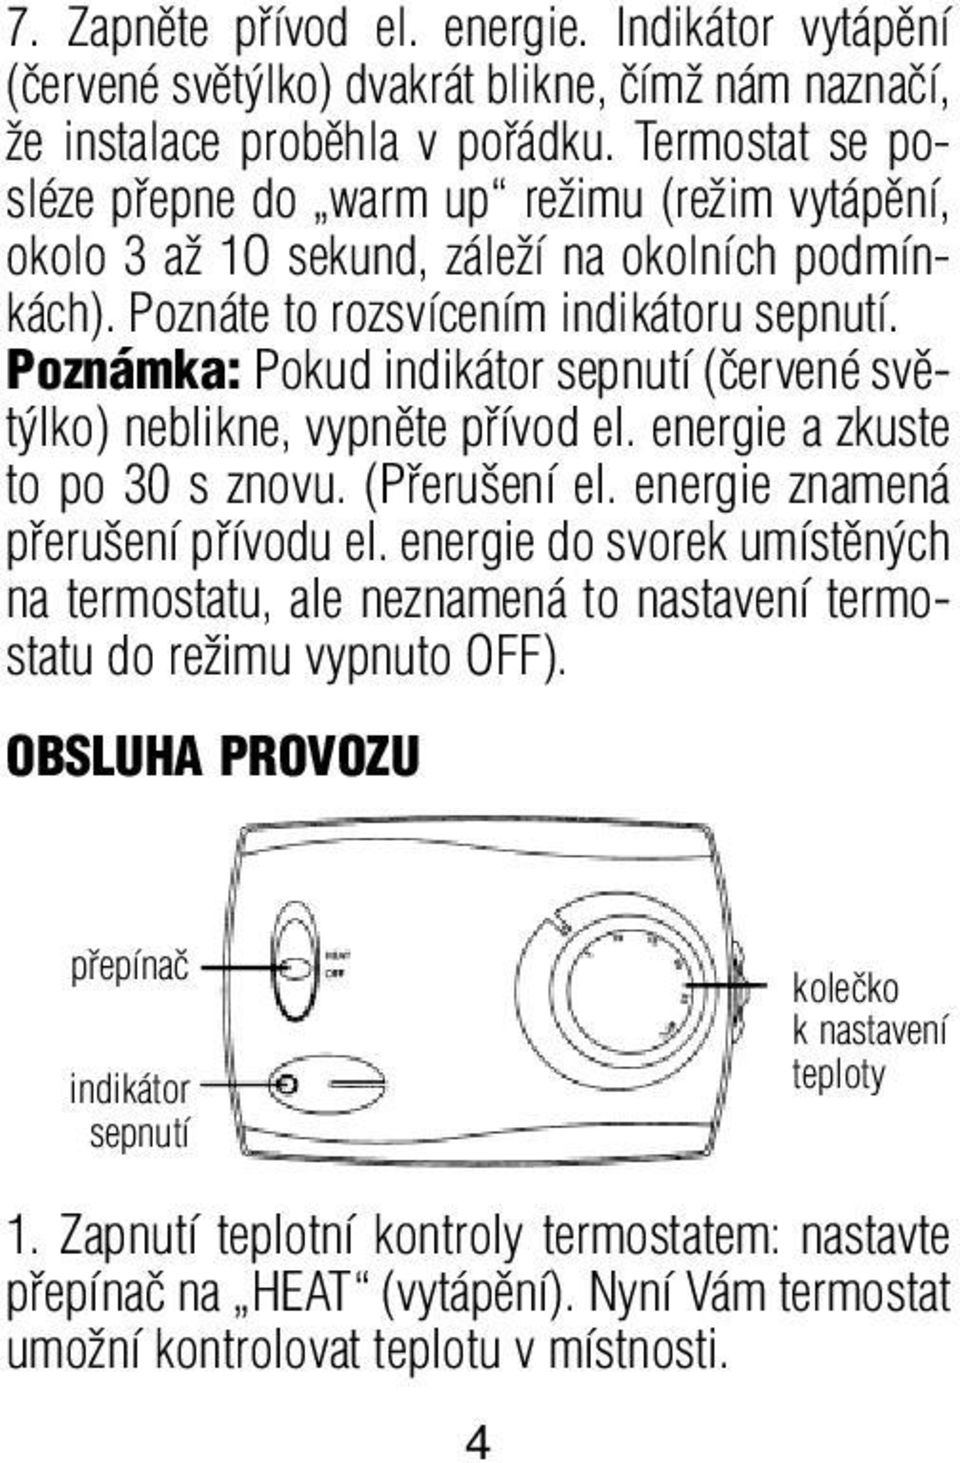 Poznámka: Pokud indikátor sepnutí (ãervené svût lko) neblikne, vypnûte pfiívod el. energie a zkuste to po 30 s znovu. (Pfieru ení el. energie znamená pfieru ení pfiívodu el.